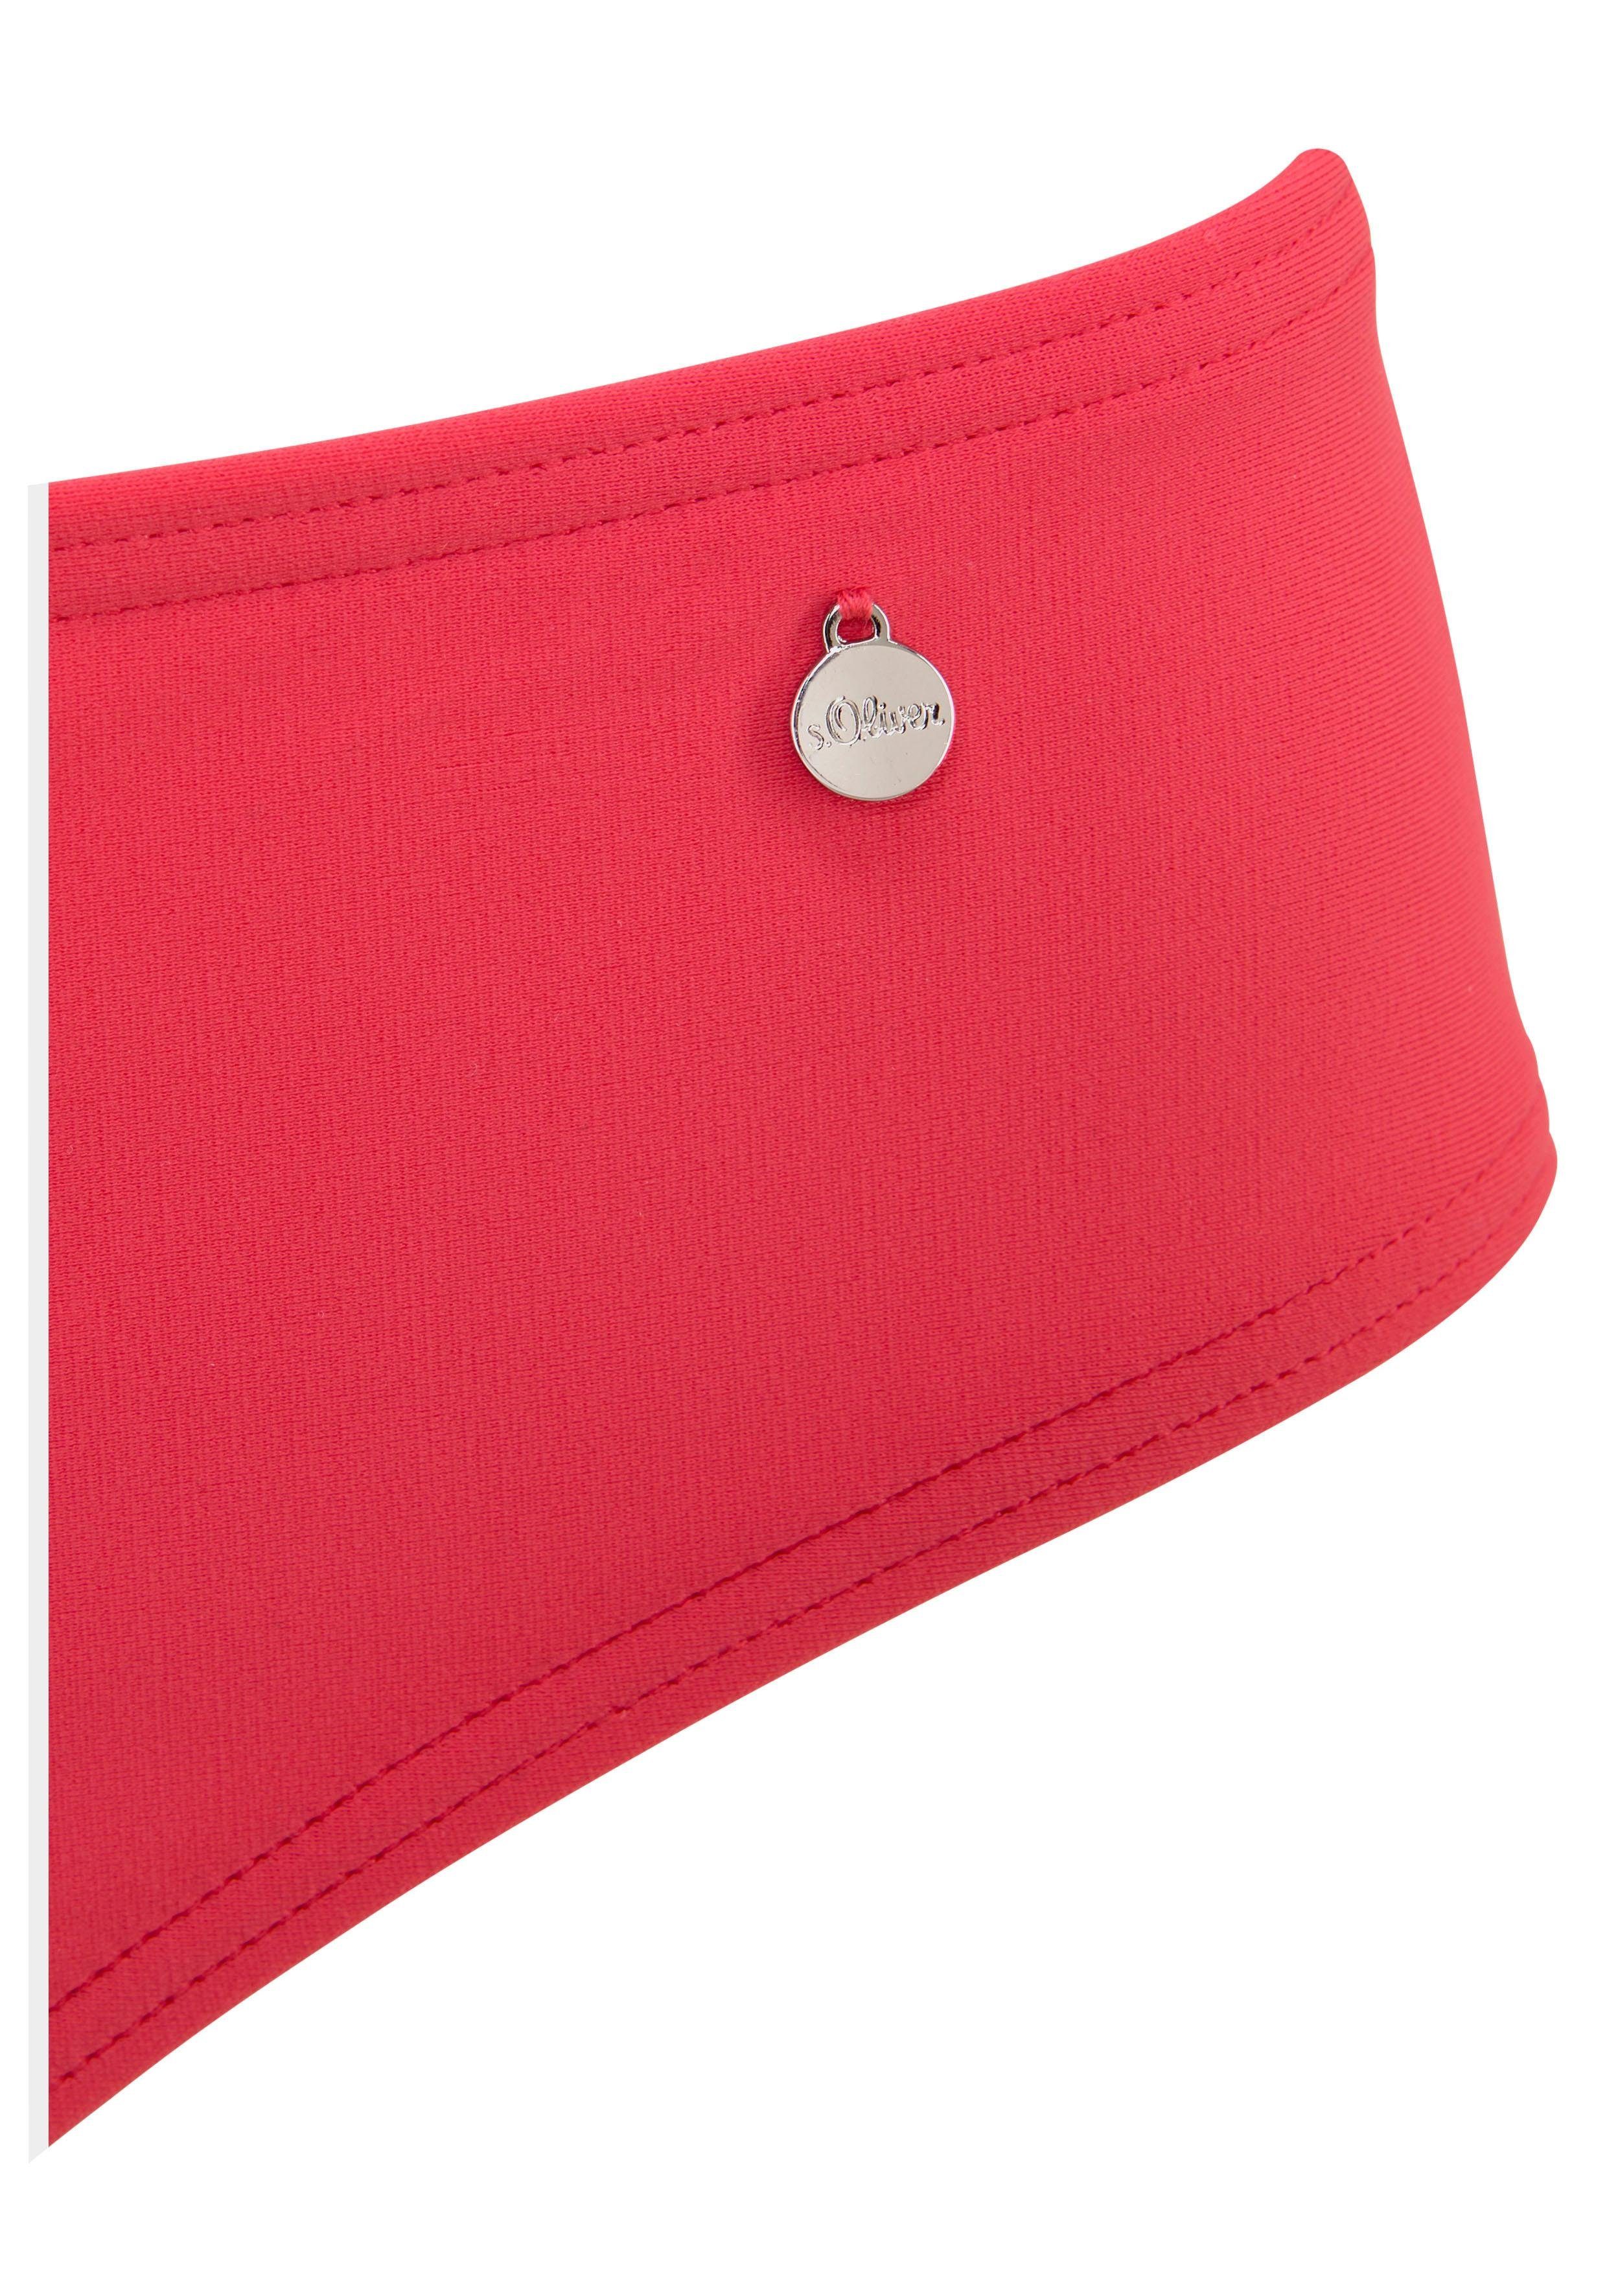 s.oliver red label beachwear bikinibroekje audrey in effen kleuren rood